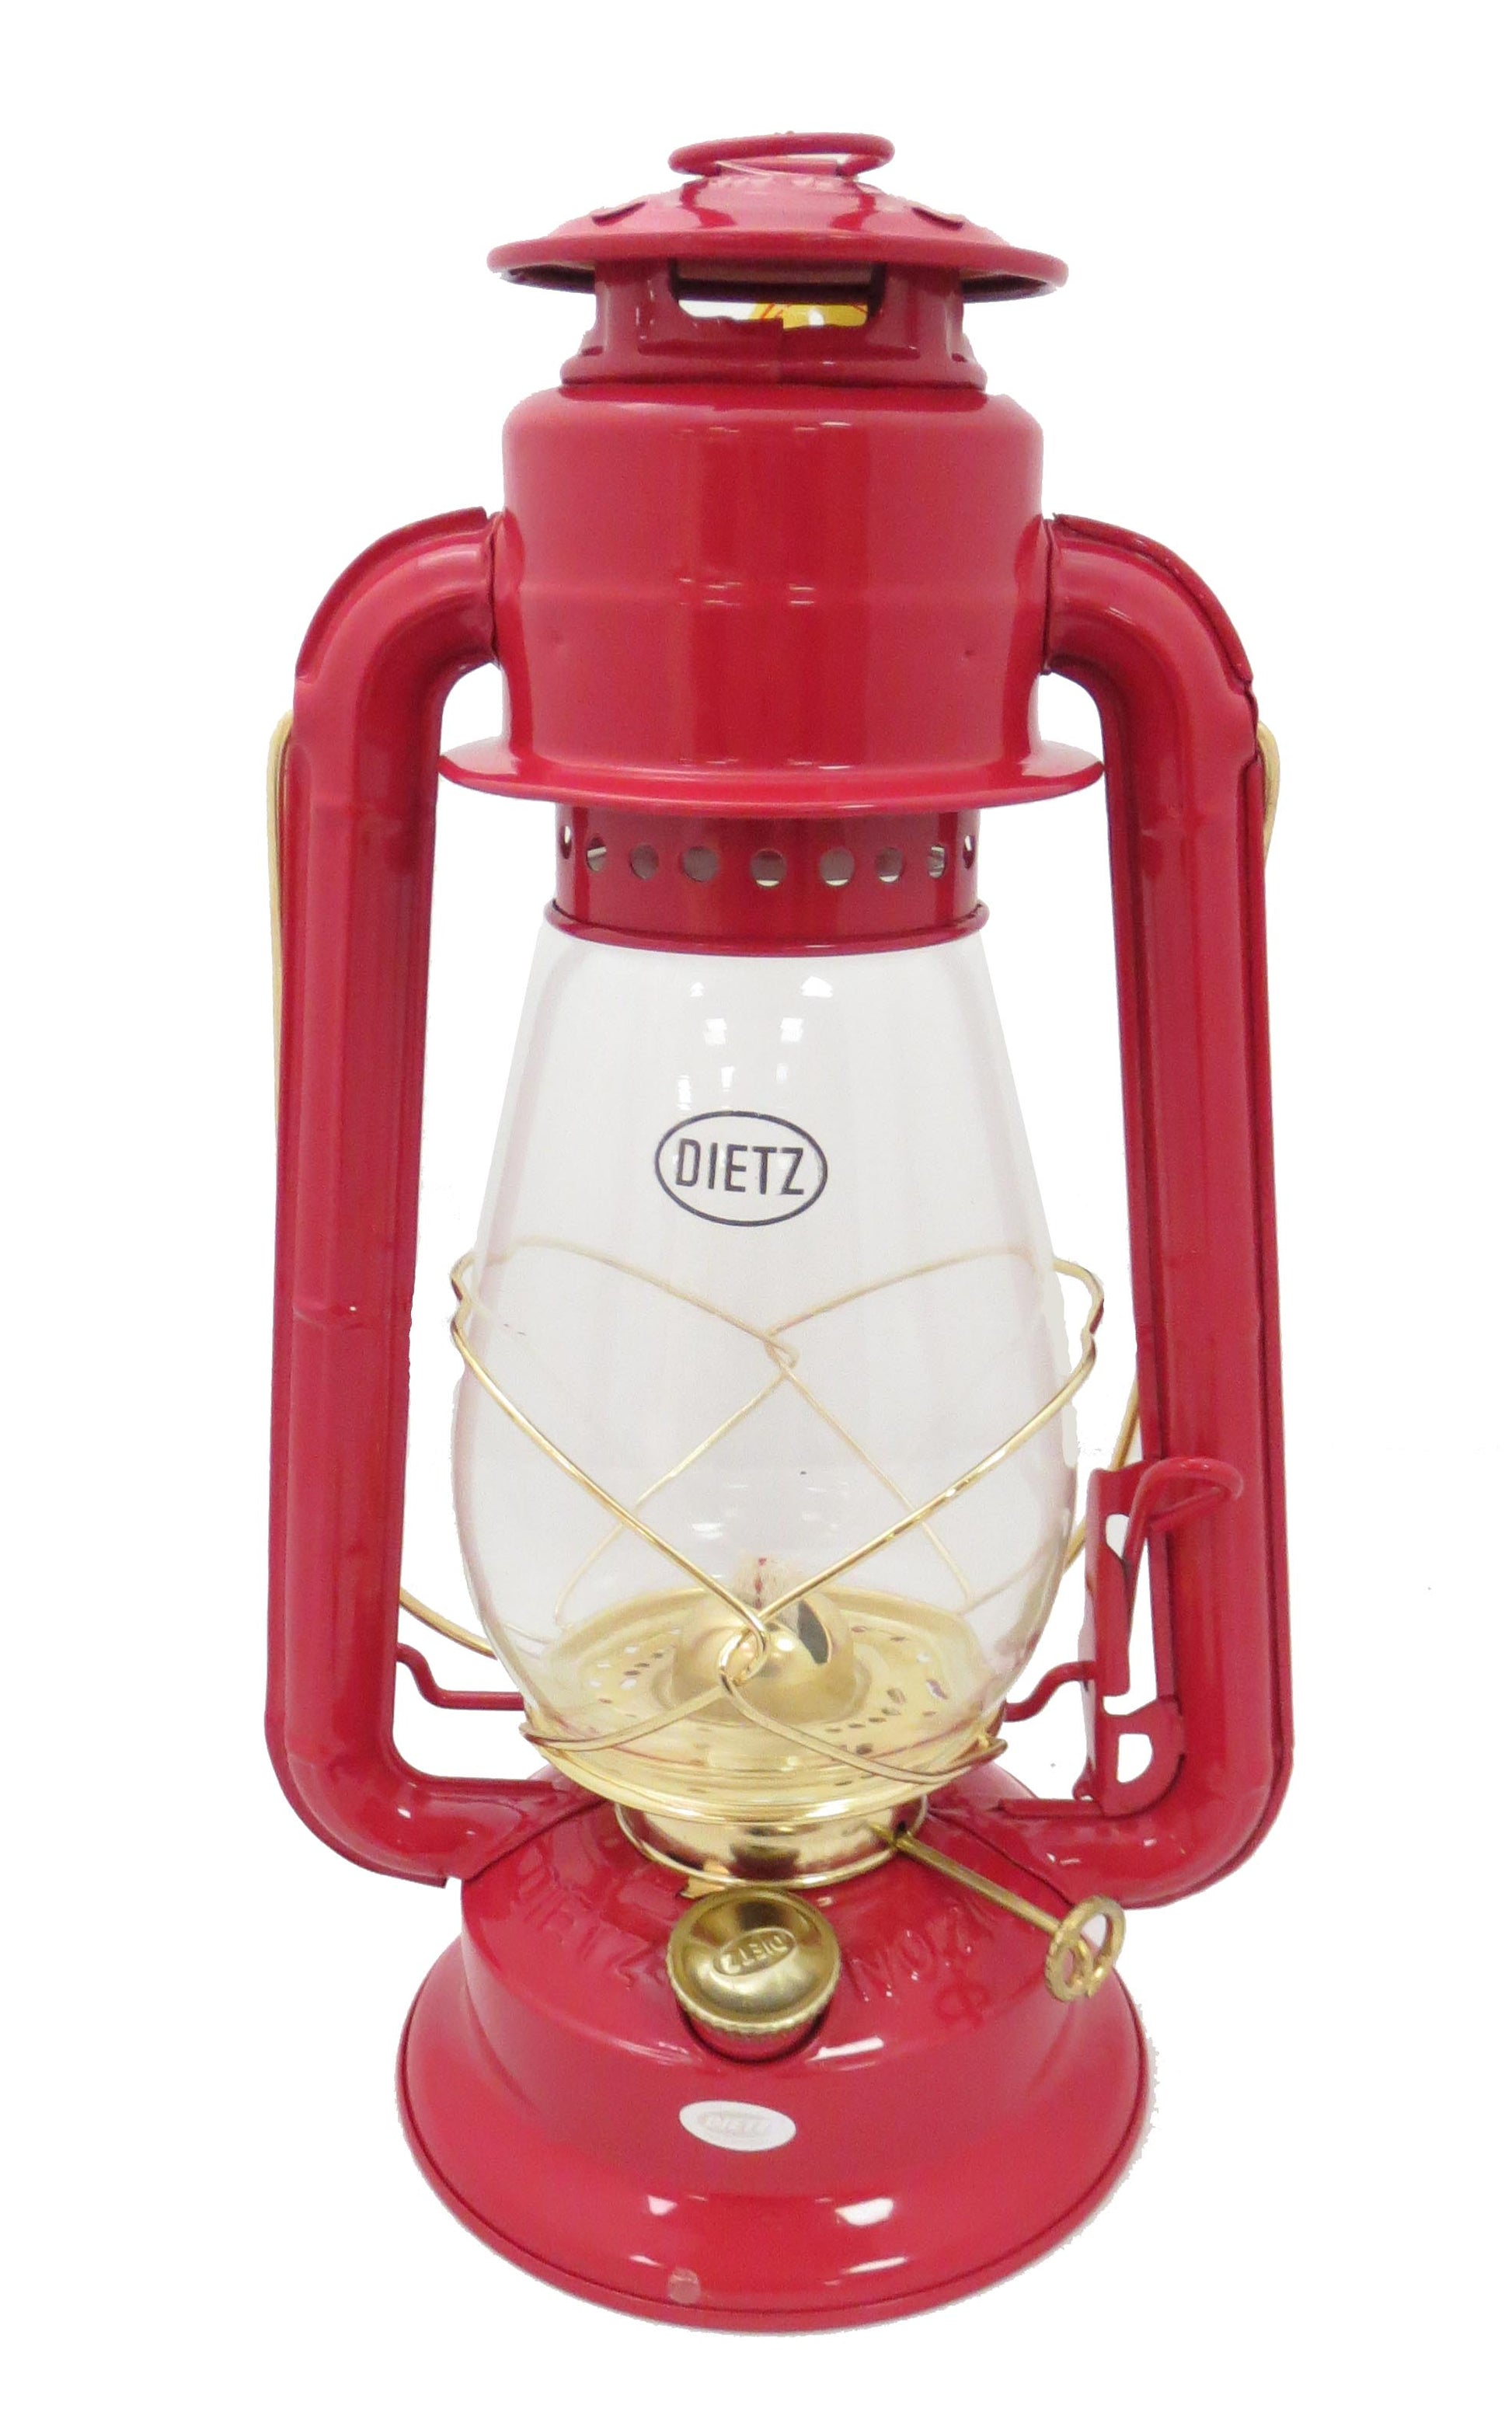 Dietz #20 Junior Lantern Red with Gold Trim